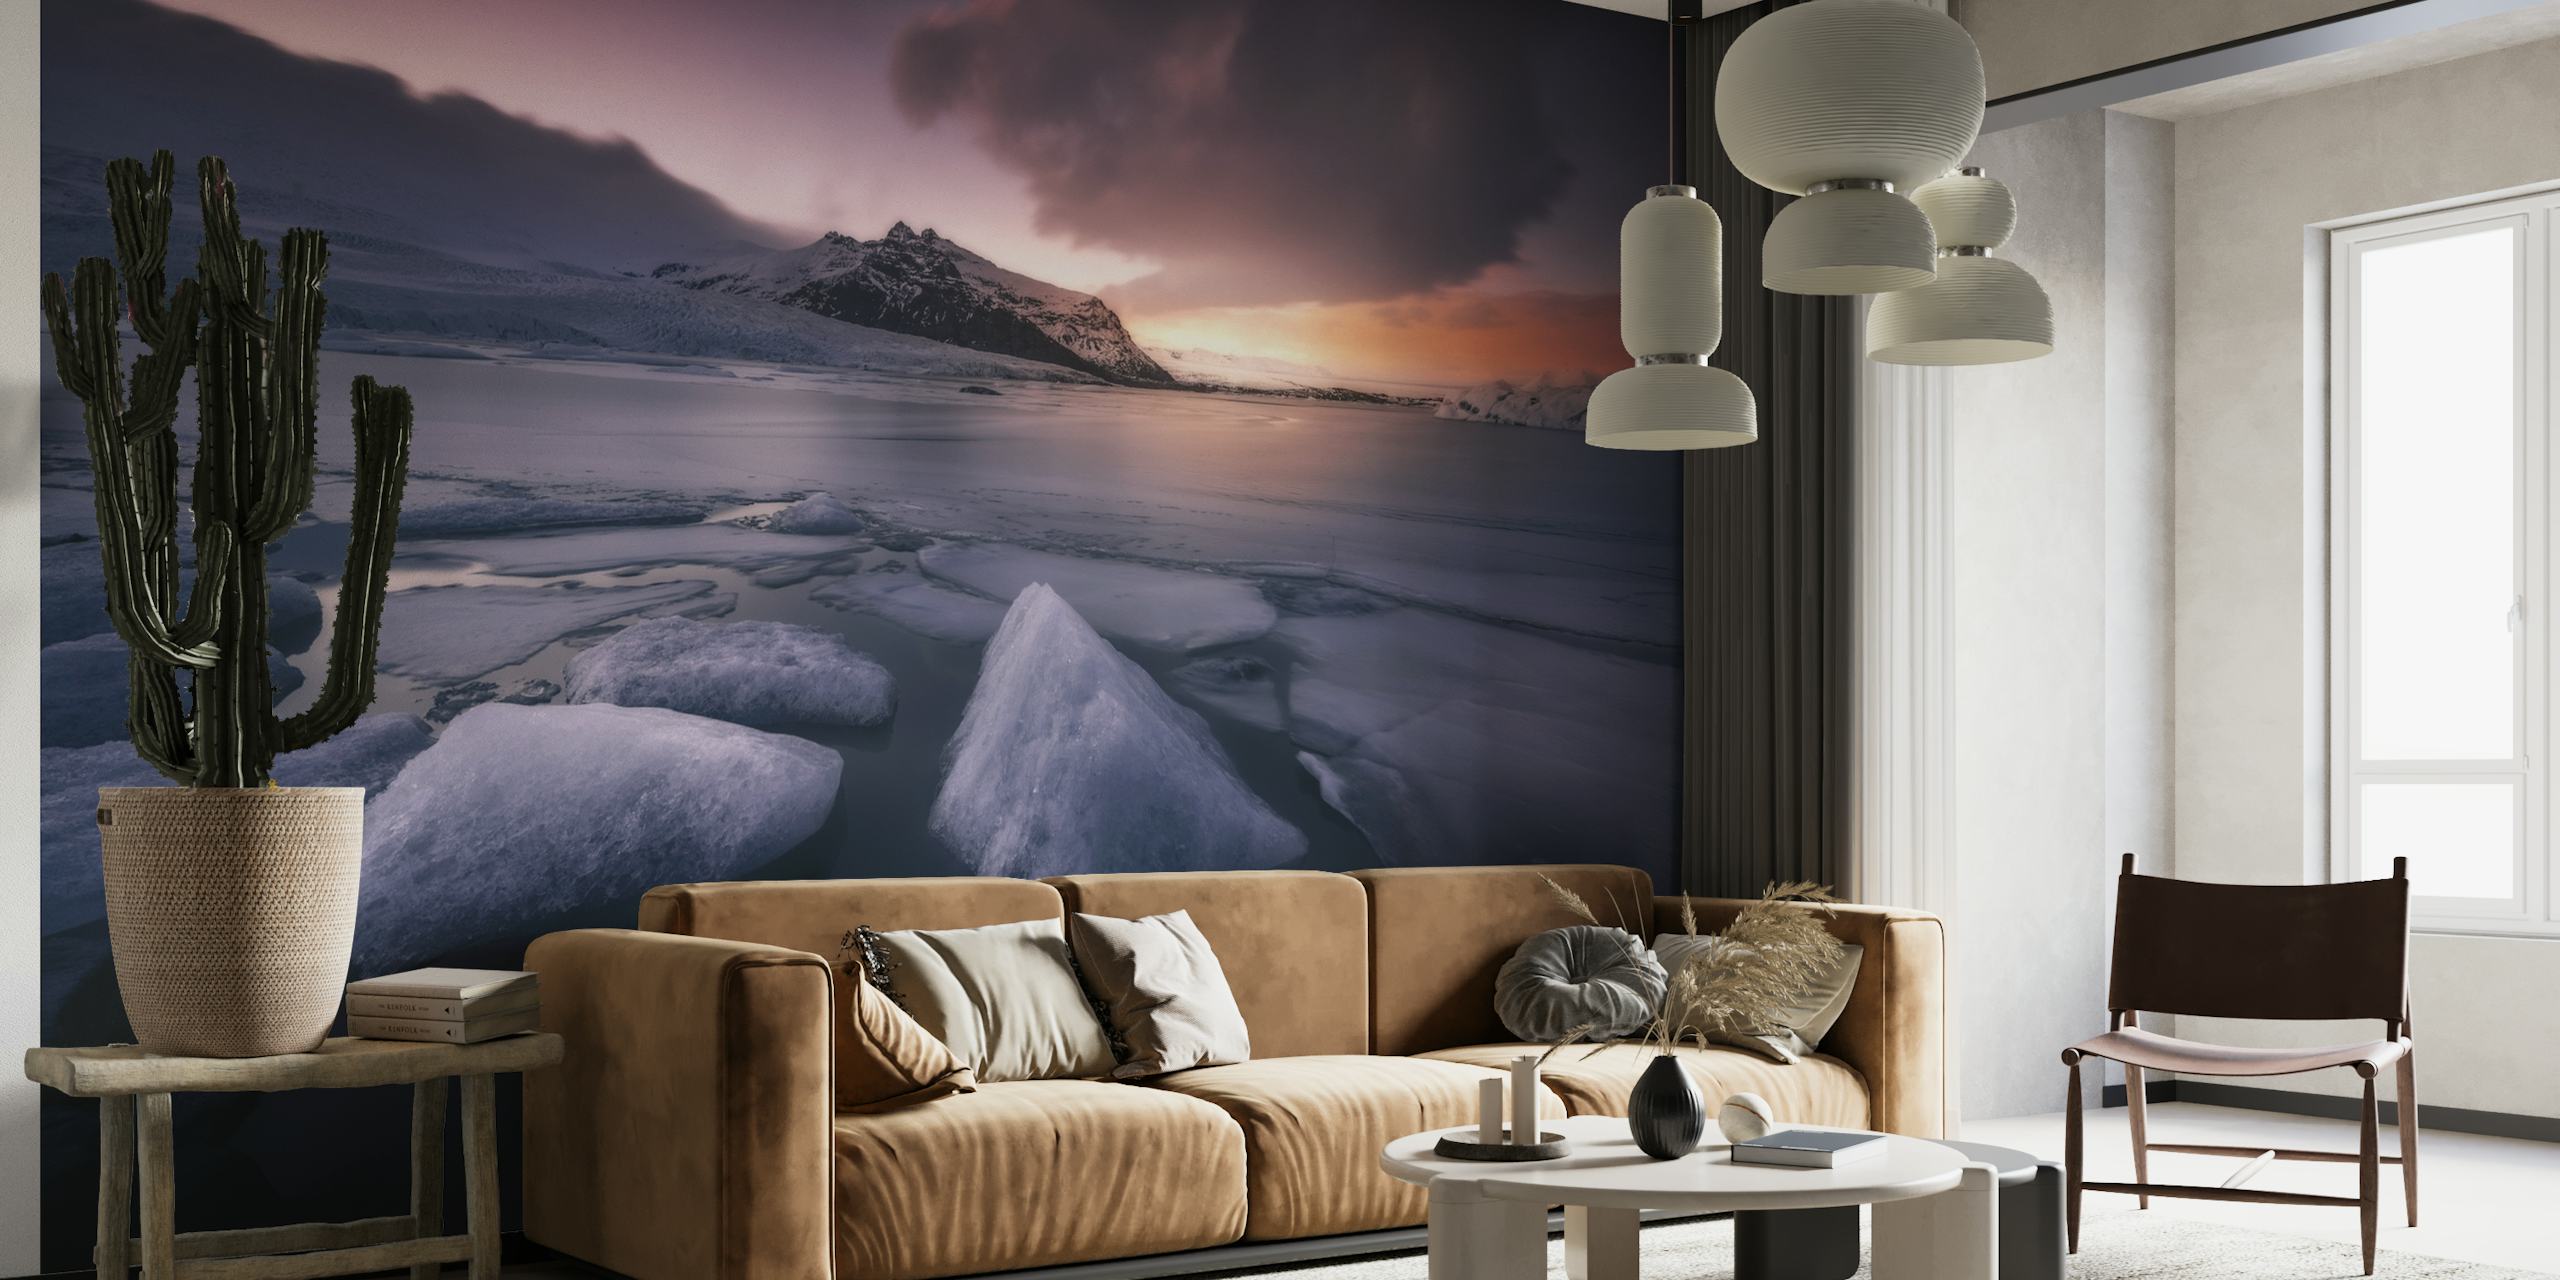 Um mural de parede representando as Últimas Luzes na lagoa Fjallsarlon com formações de gelo e um pôr do sol sobre as montanhas.